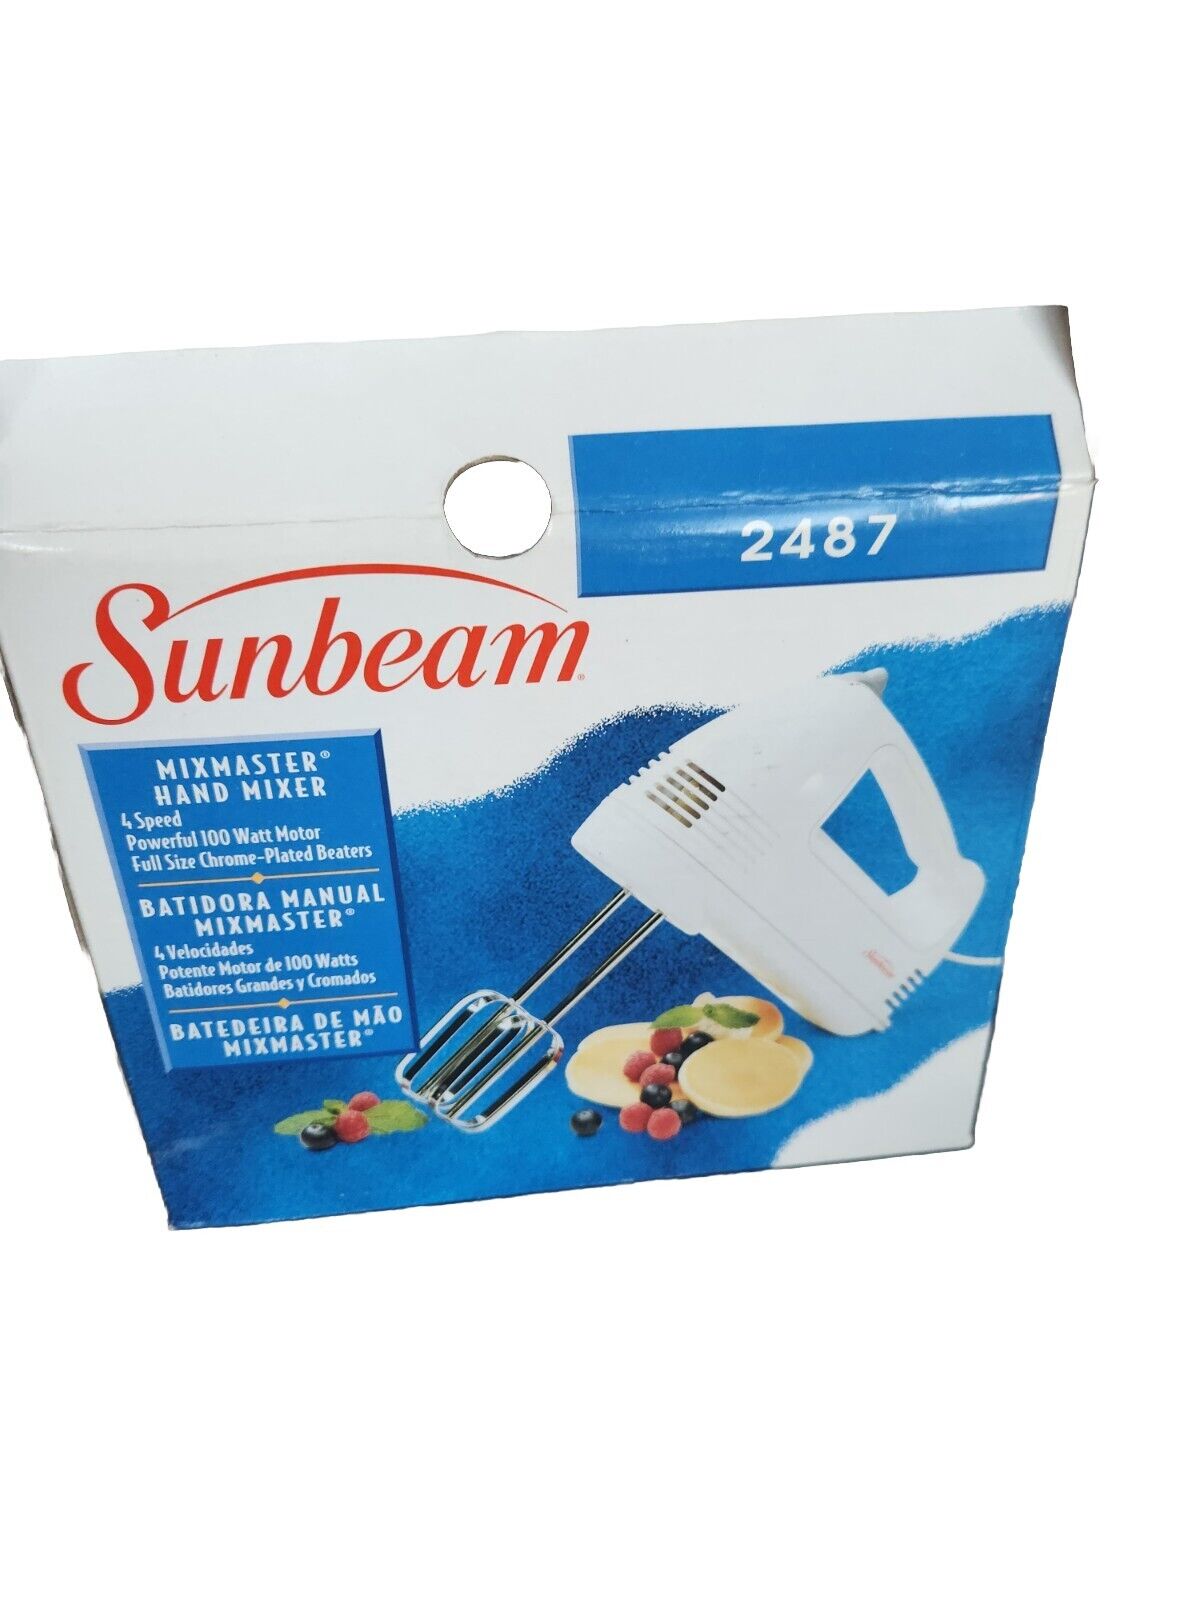 Sunbeam 2487 Mixmaster Hand Mixer 100 Watt 4 Speed New In Box